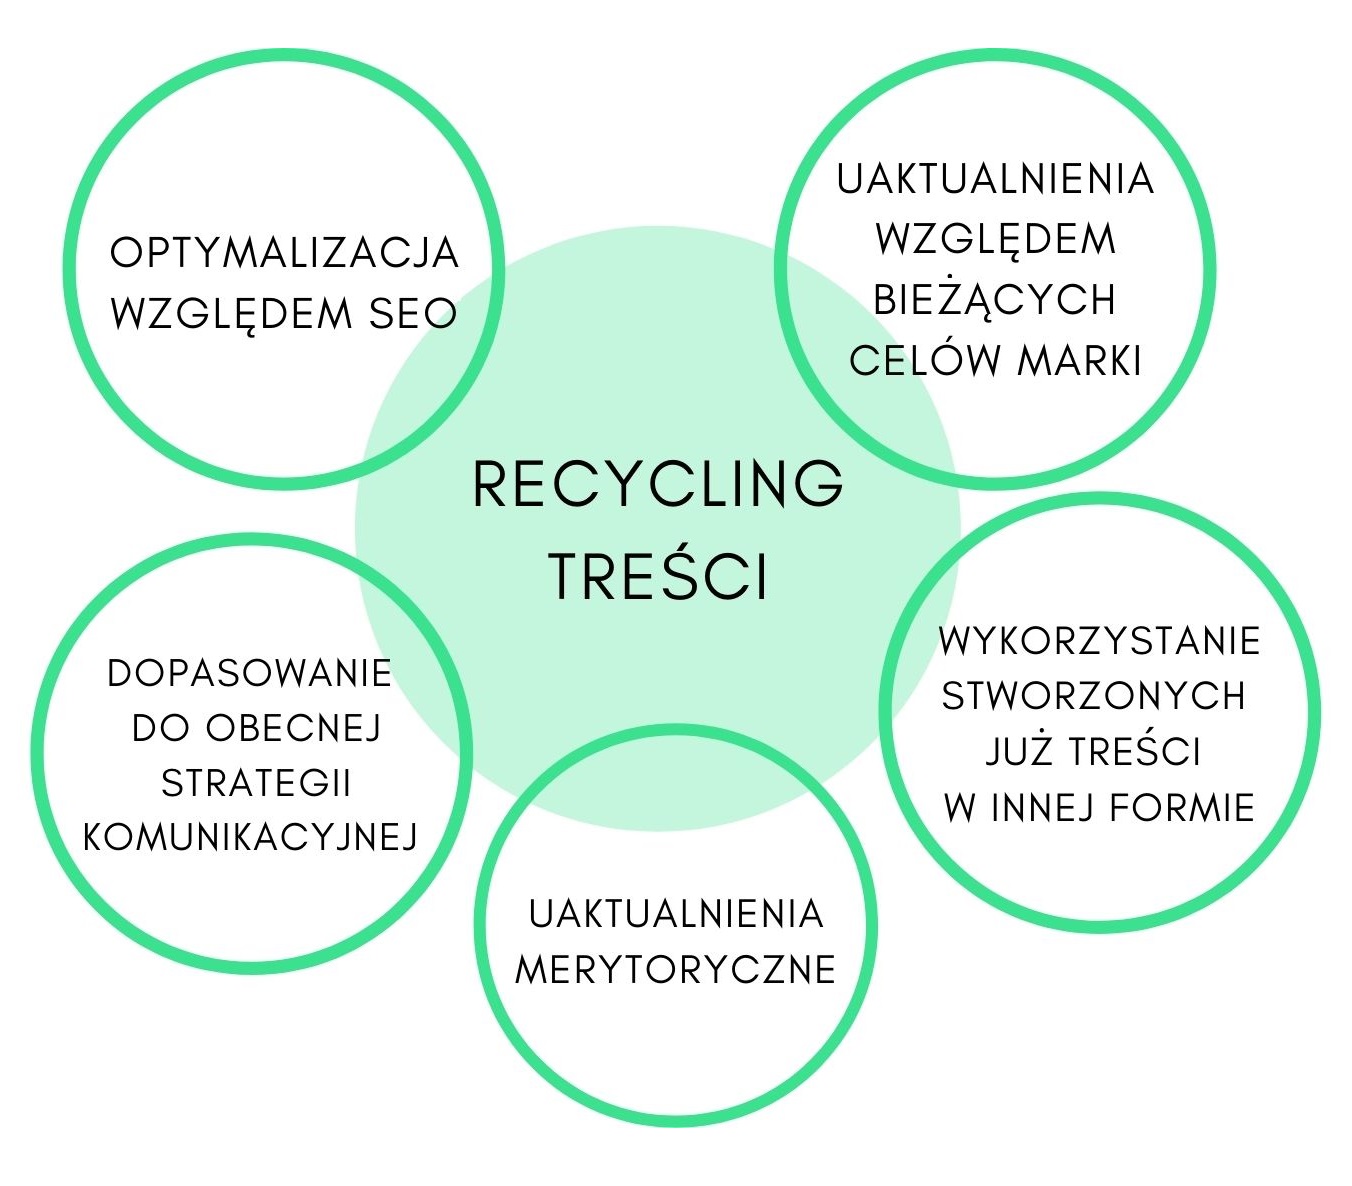 Recycling treści